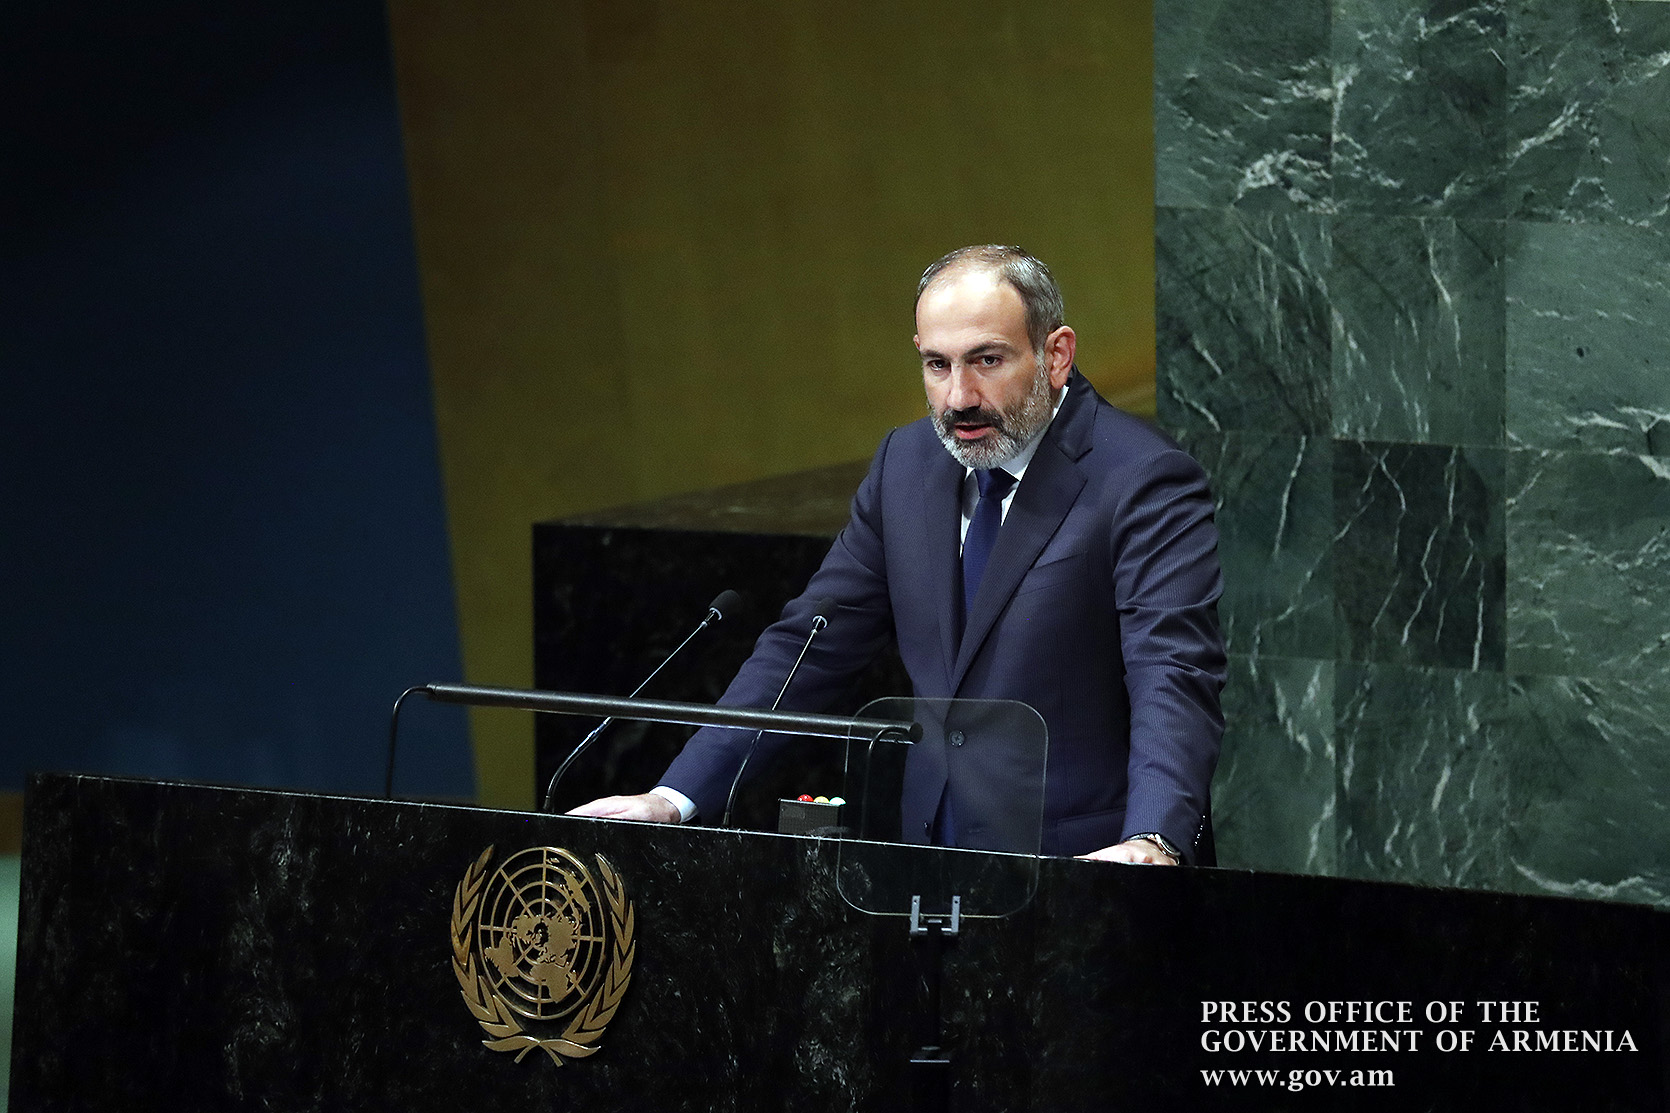 Статус и безопасность Арцаха будут исключительным приоритетом Армении - премьер-министр